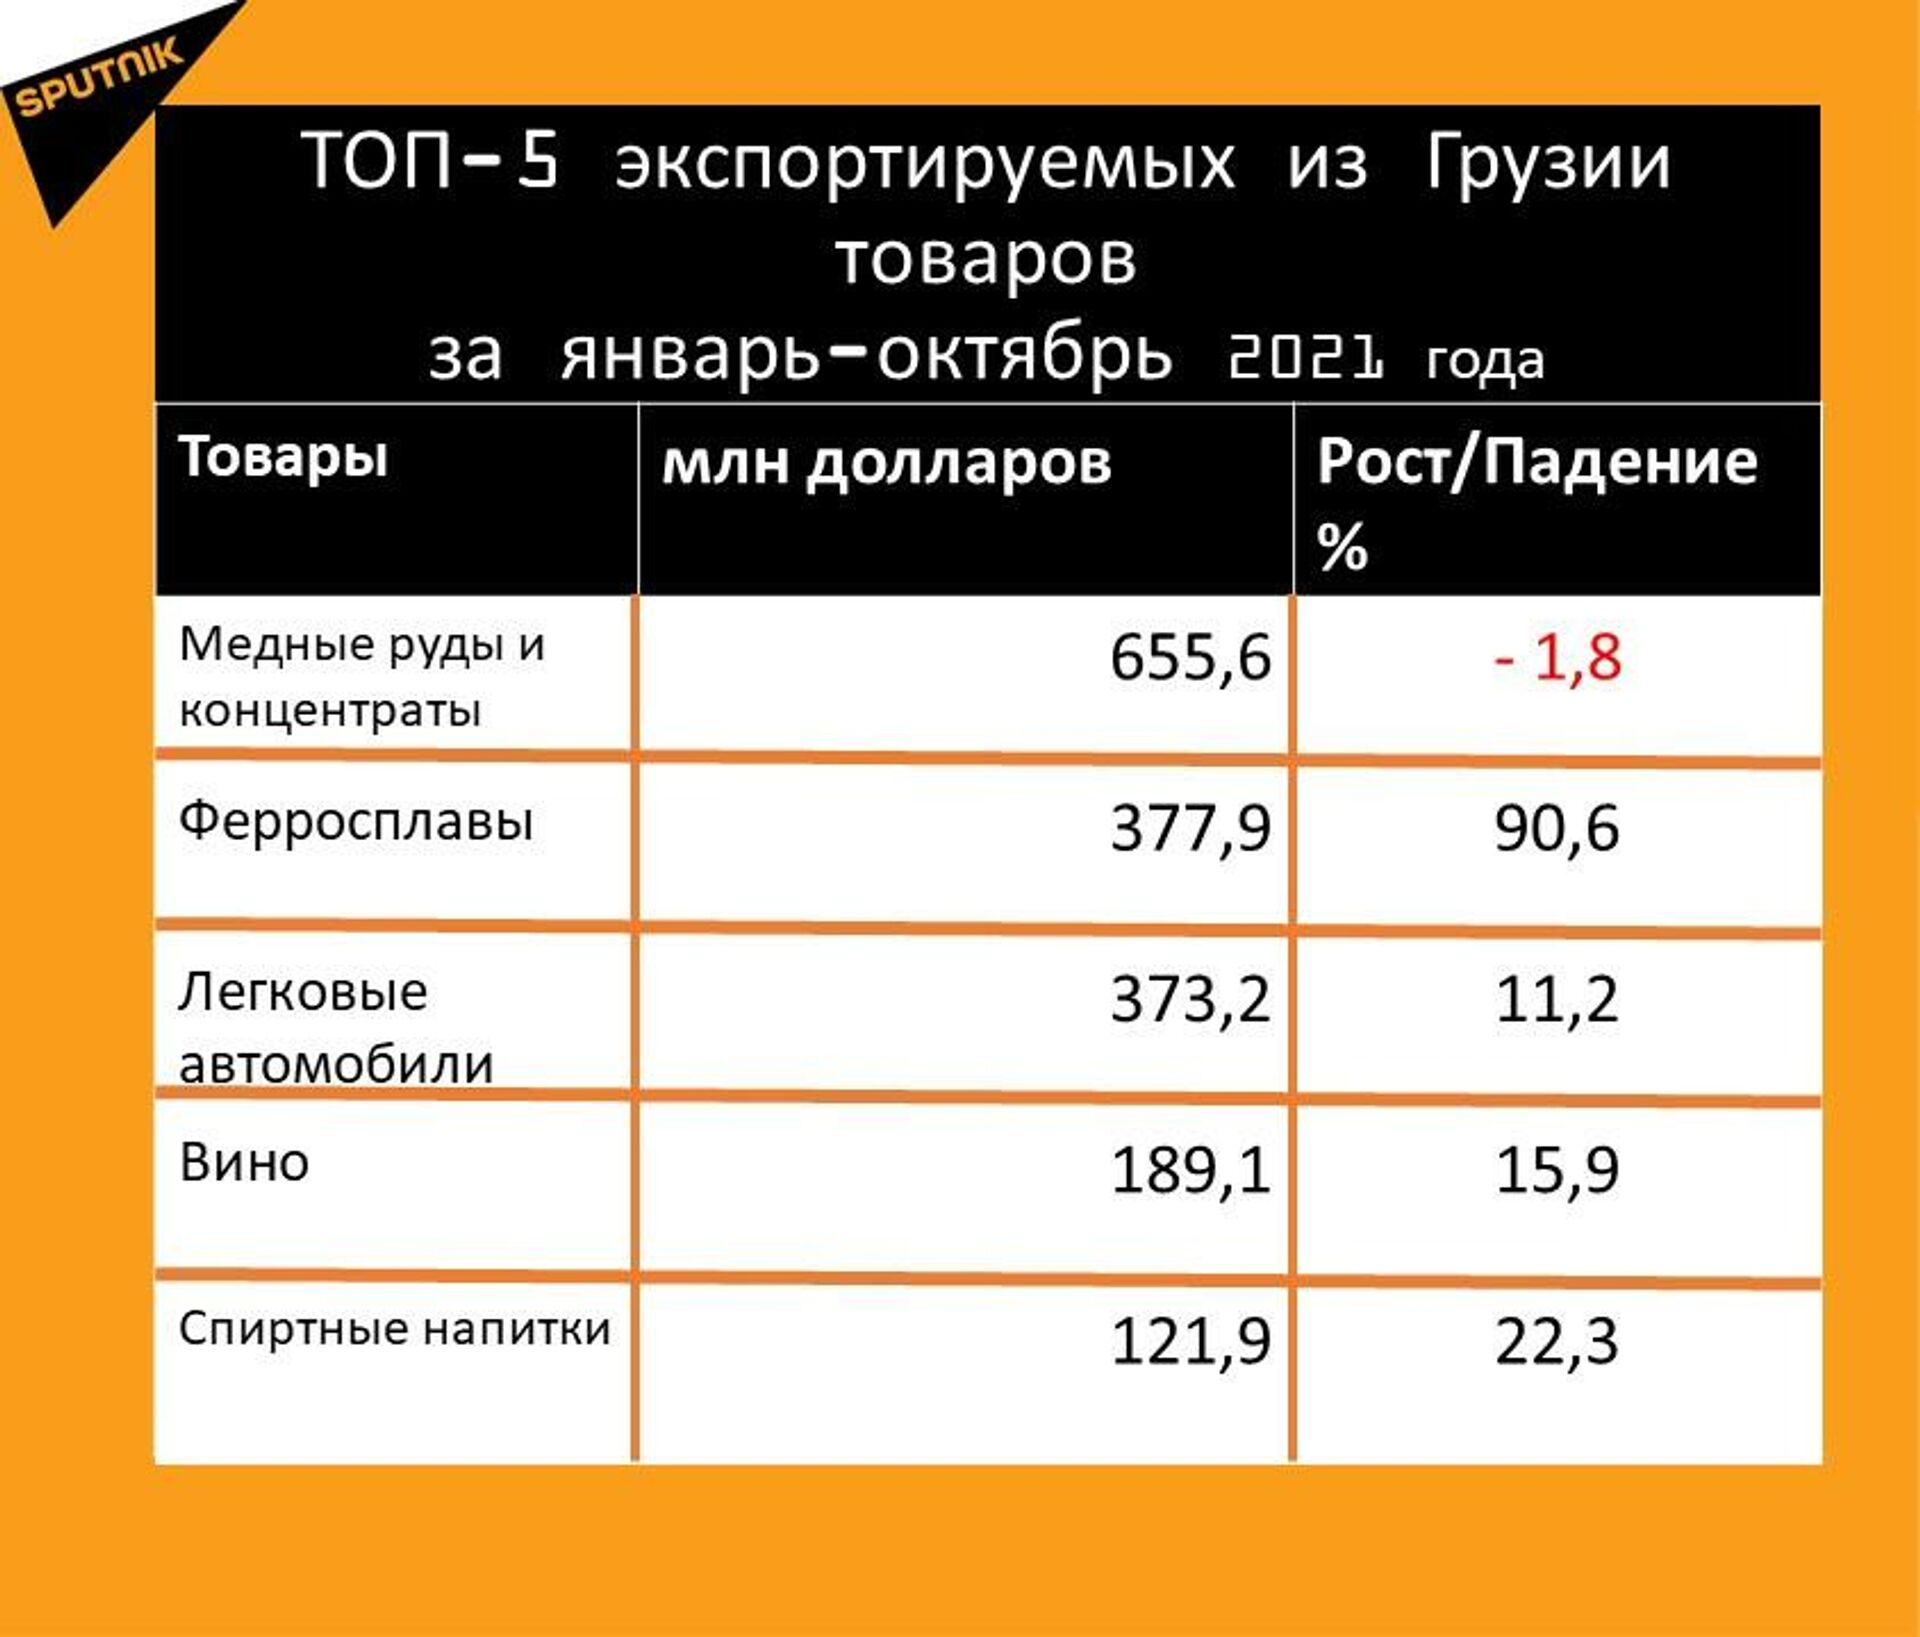 Статистика внешнеторгового оборота Грузии за январь-октябрь 2021 года, экспорт - Sputnik Грузия, 1920, 20.11.2021